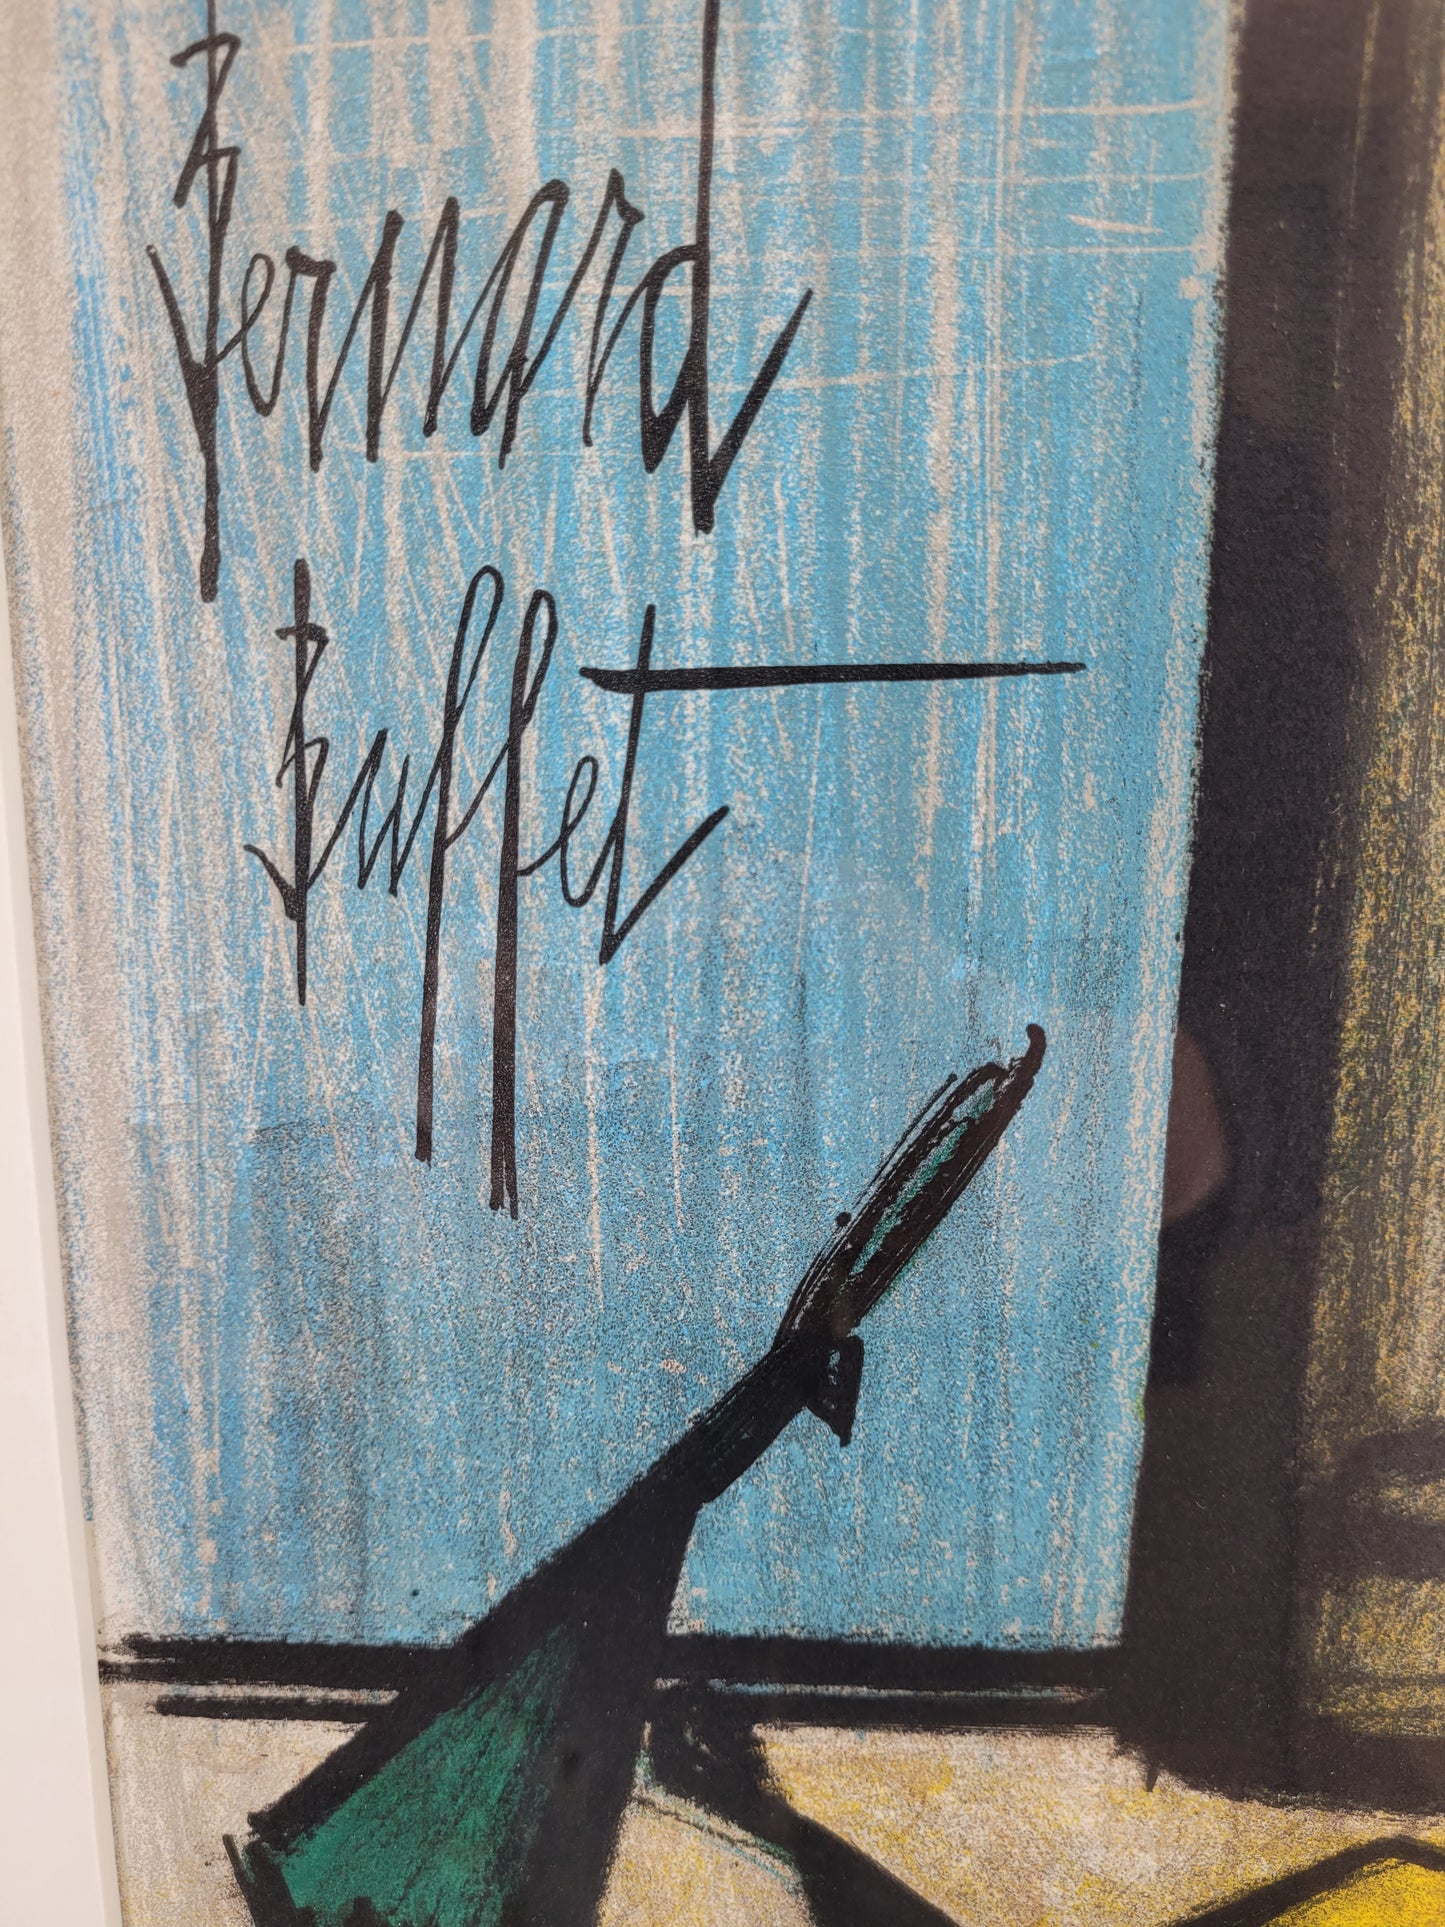 Bernard Buffet (1928-1999) Grafik Lithographie Expressionistisches Stillleben